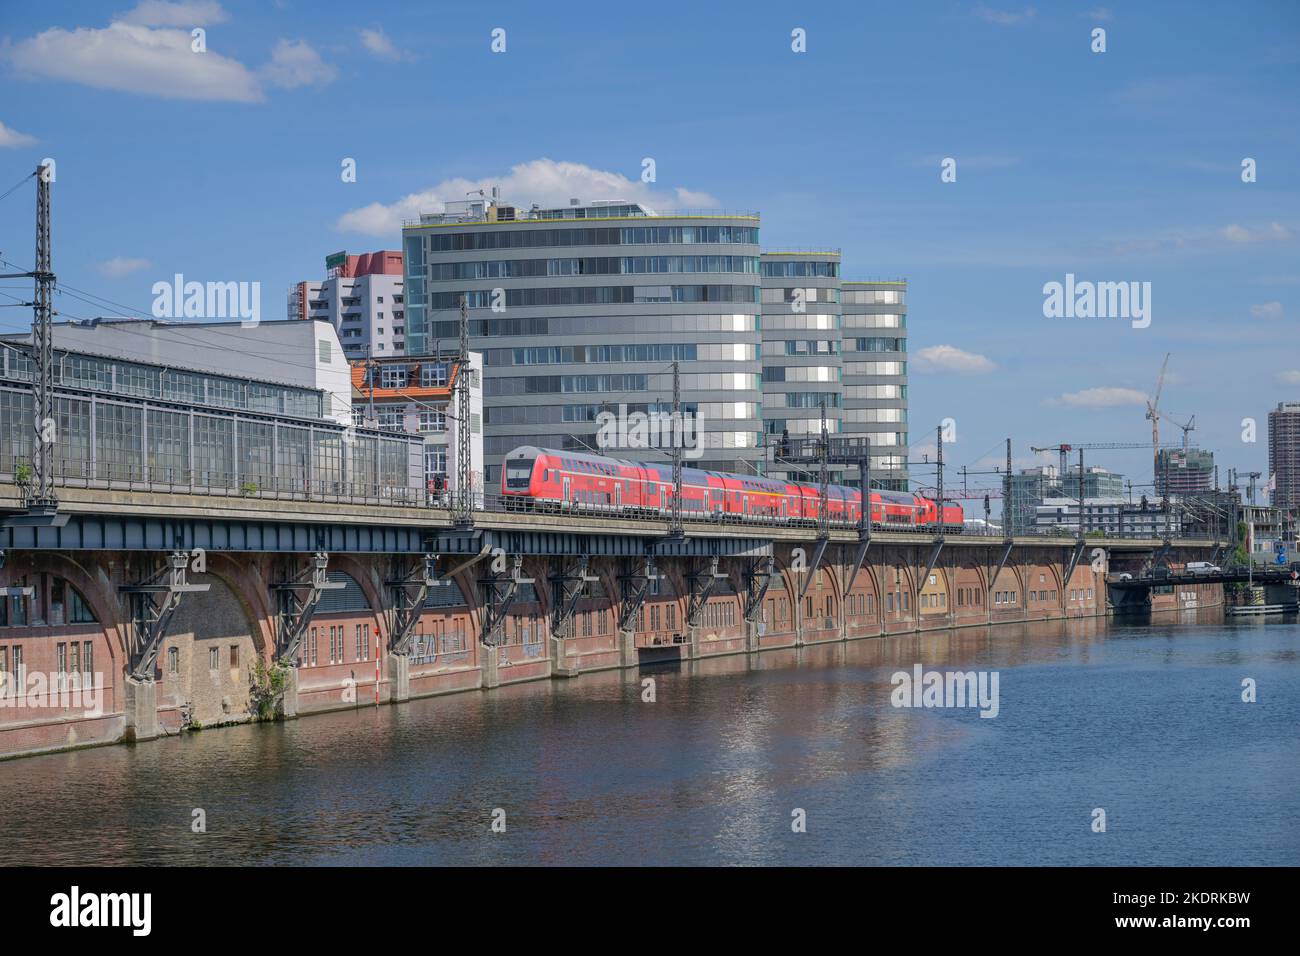 BVG Hauptsitz, Spree, Regionalbahn, Jannowitzbrücke, Mitte, Berlin, Deutschland Stock Photo